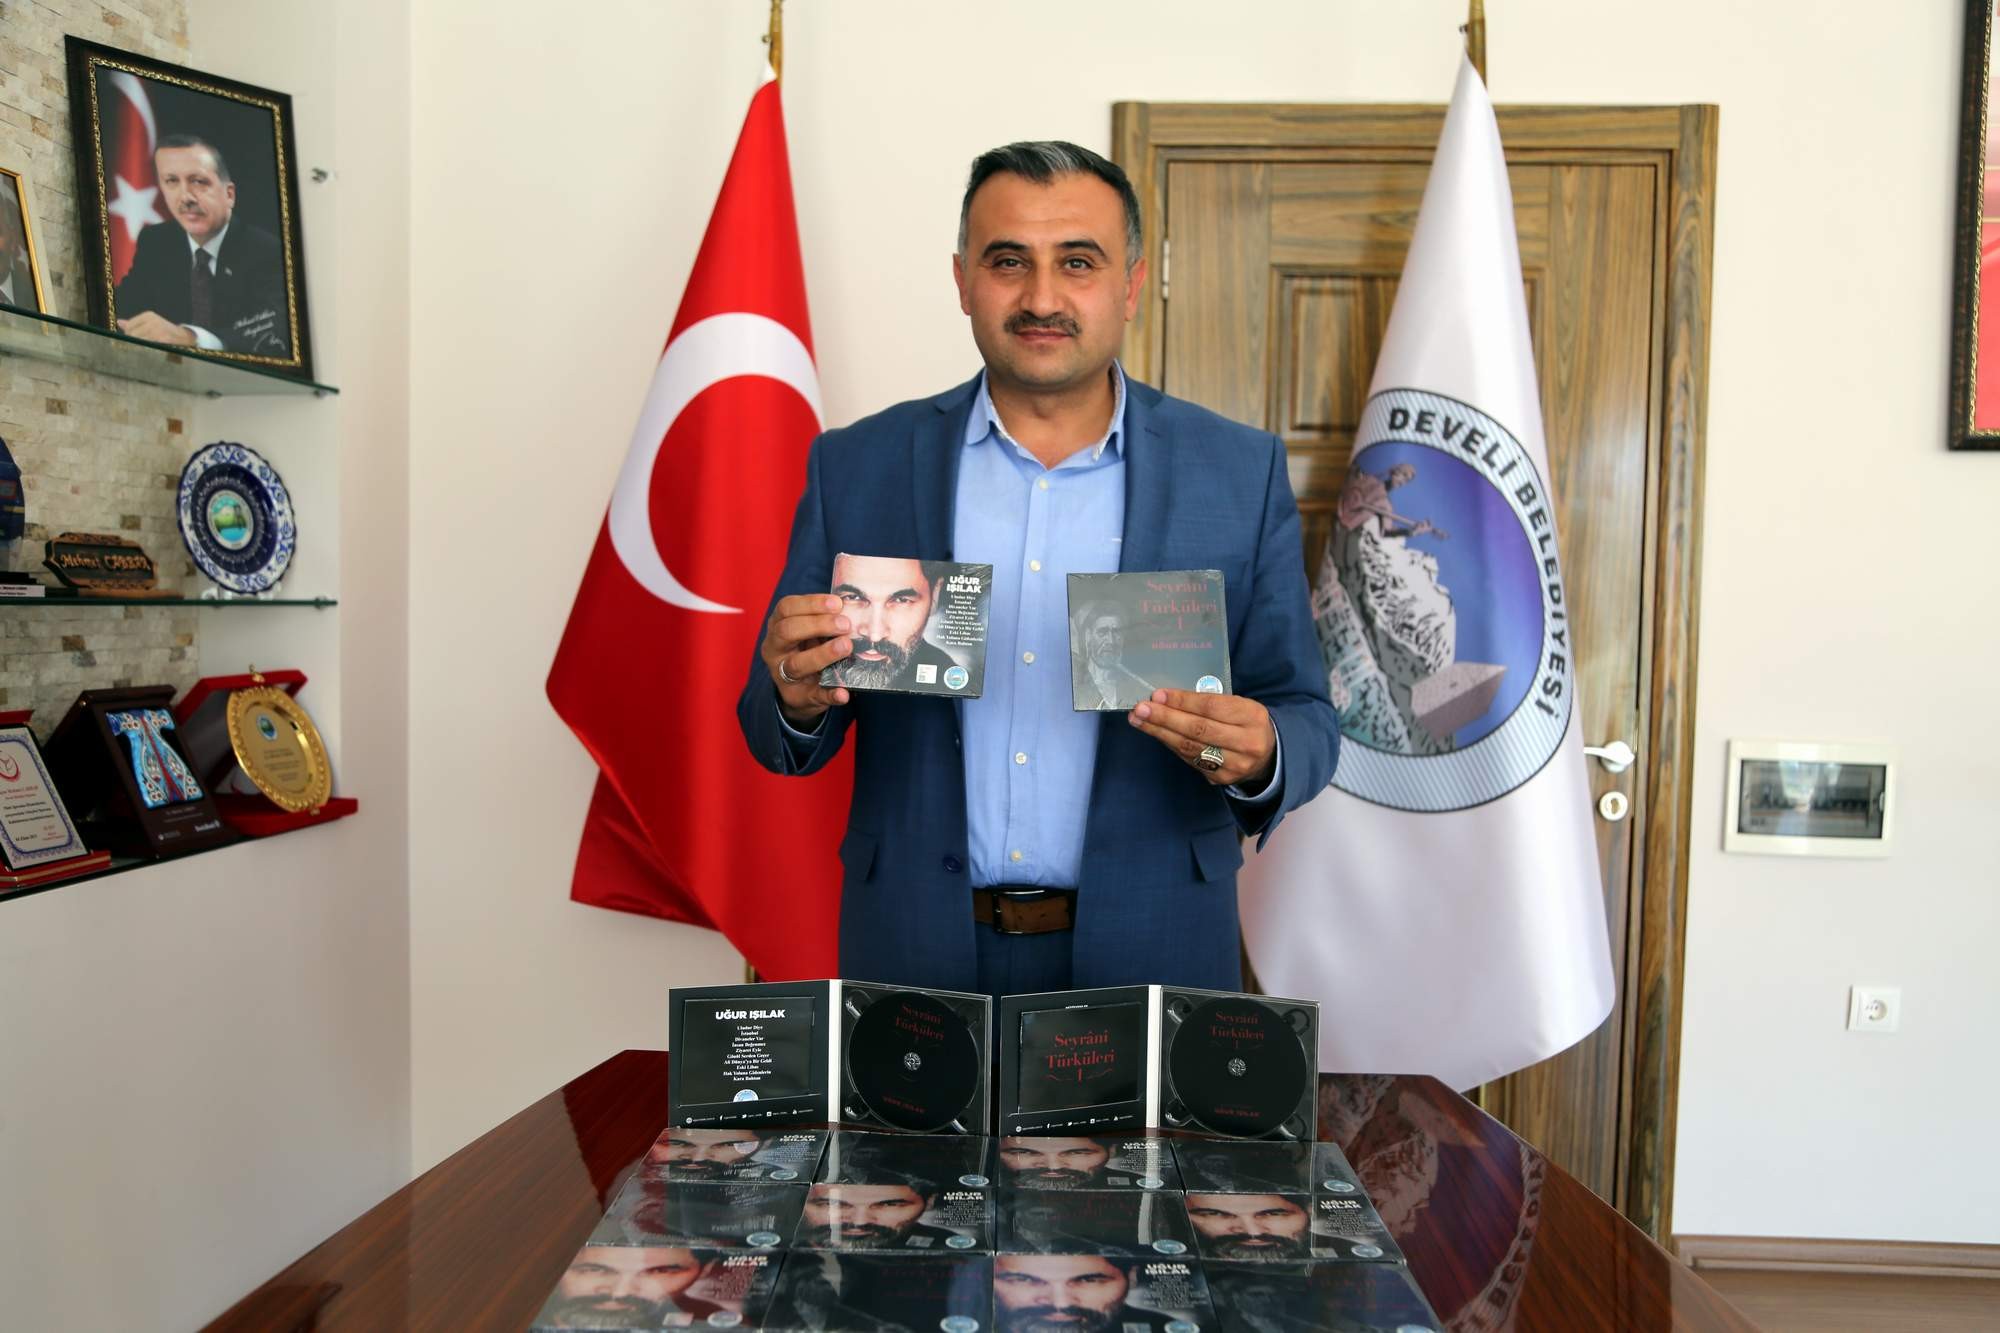 Develi Belediyesi Başkanı Mehmet Cabbar: “Aşık Seyrani Develi’nin bir değeridir”